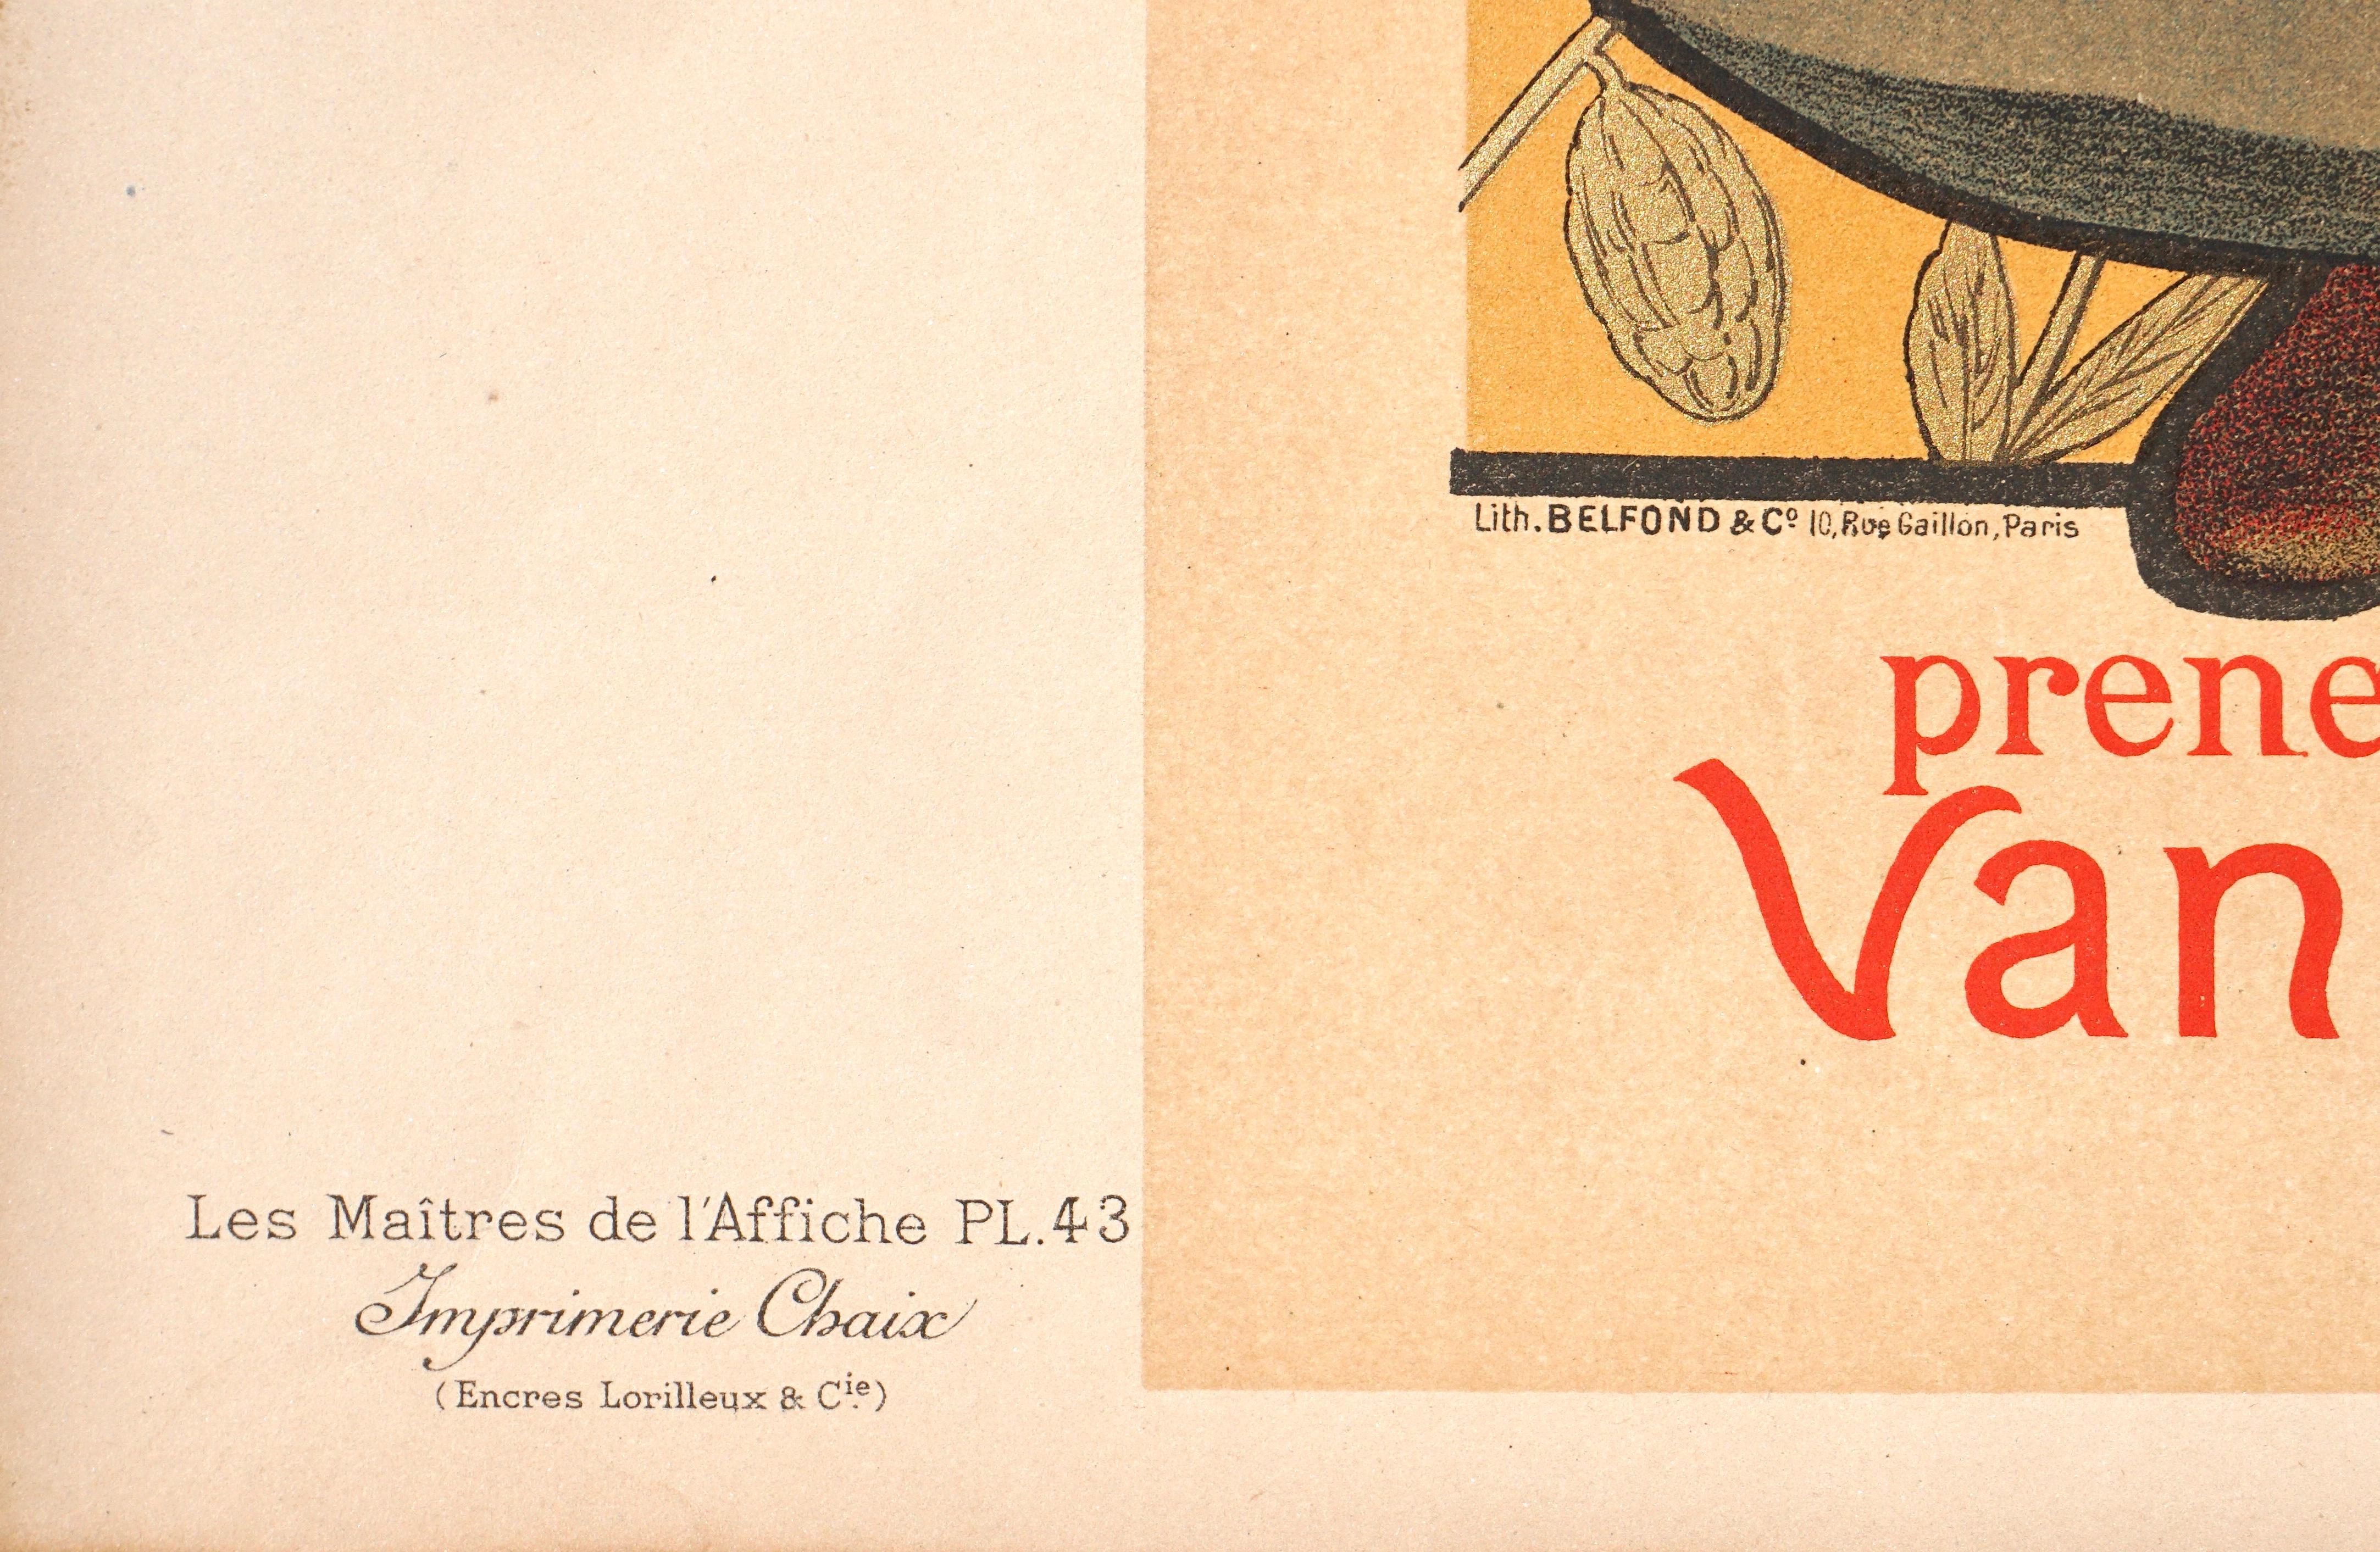 Willette- Maitres de L'affiche: Cacao Van Houten, original lithograph 1896, Impremie CHAIX. PL. 43 France, 1890-1919, paper

Willette: Cacao Van Houten

Original stone Lithograph on vélin paper 1896
Sheet Size: 15.75 x 11.4 in. / 39.5 x 29